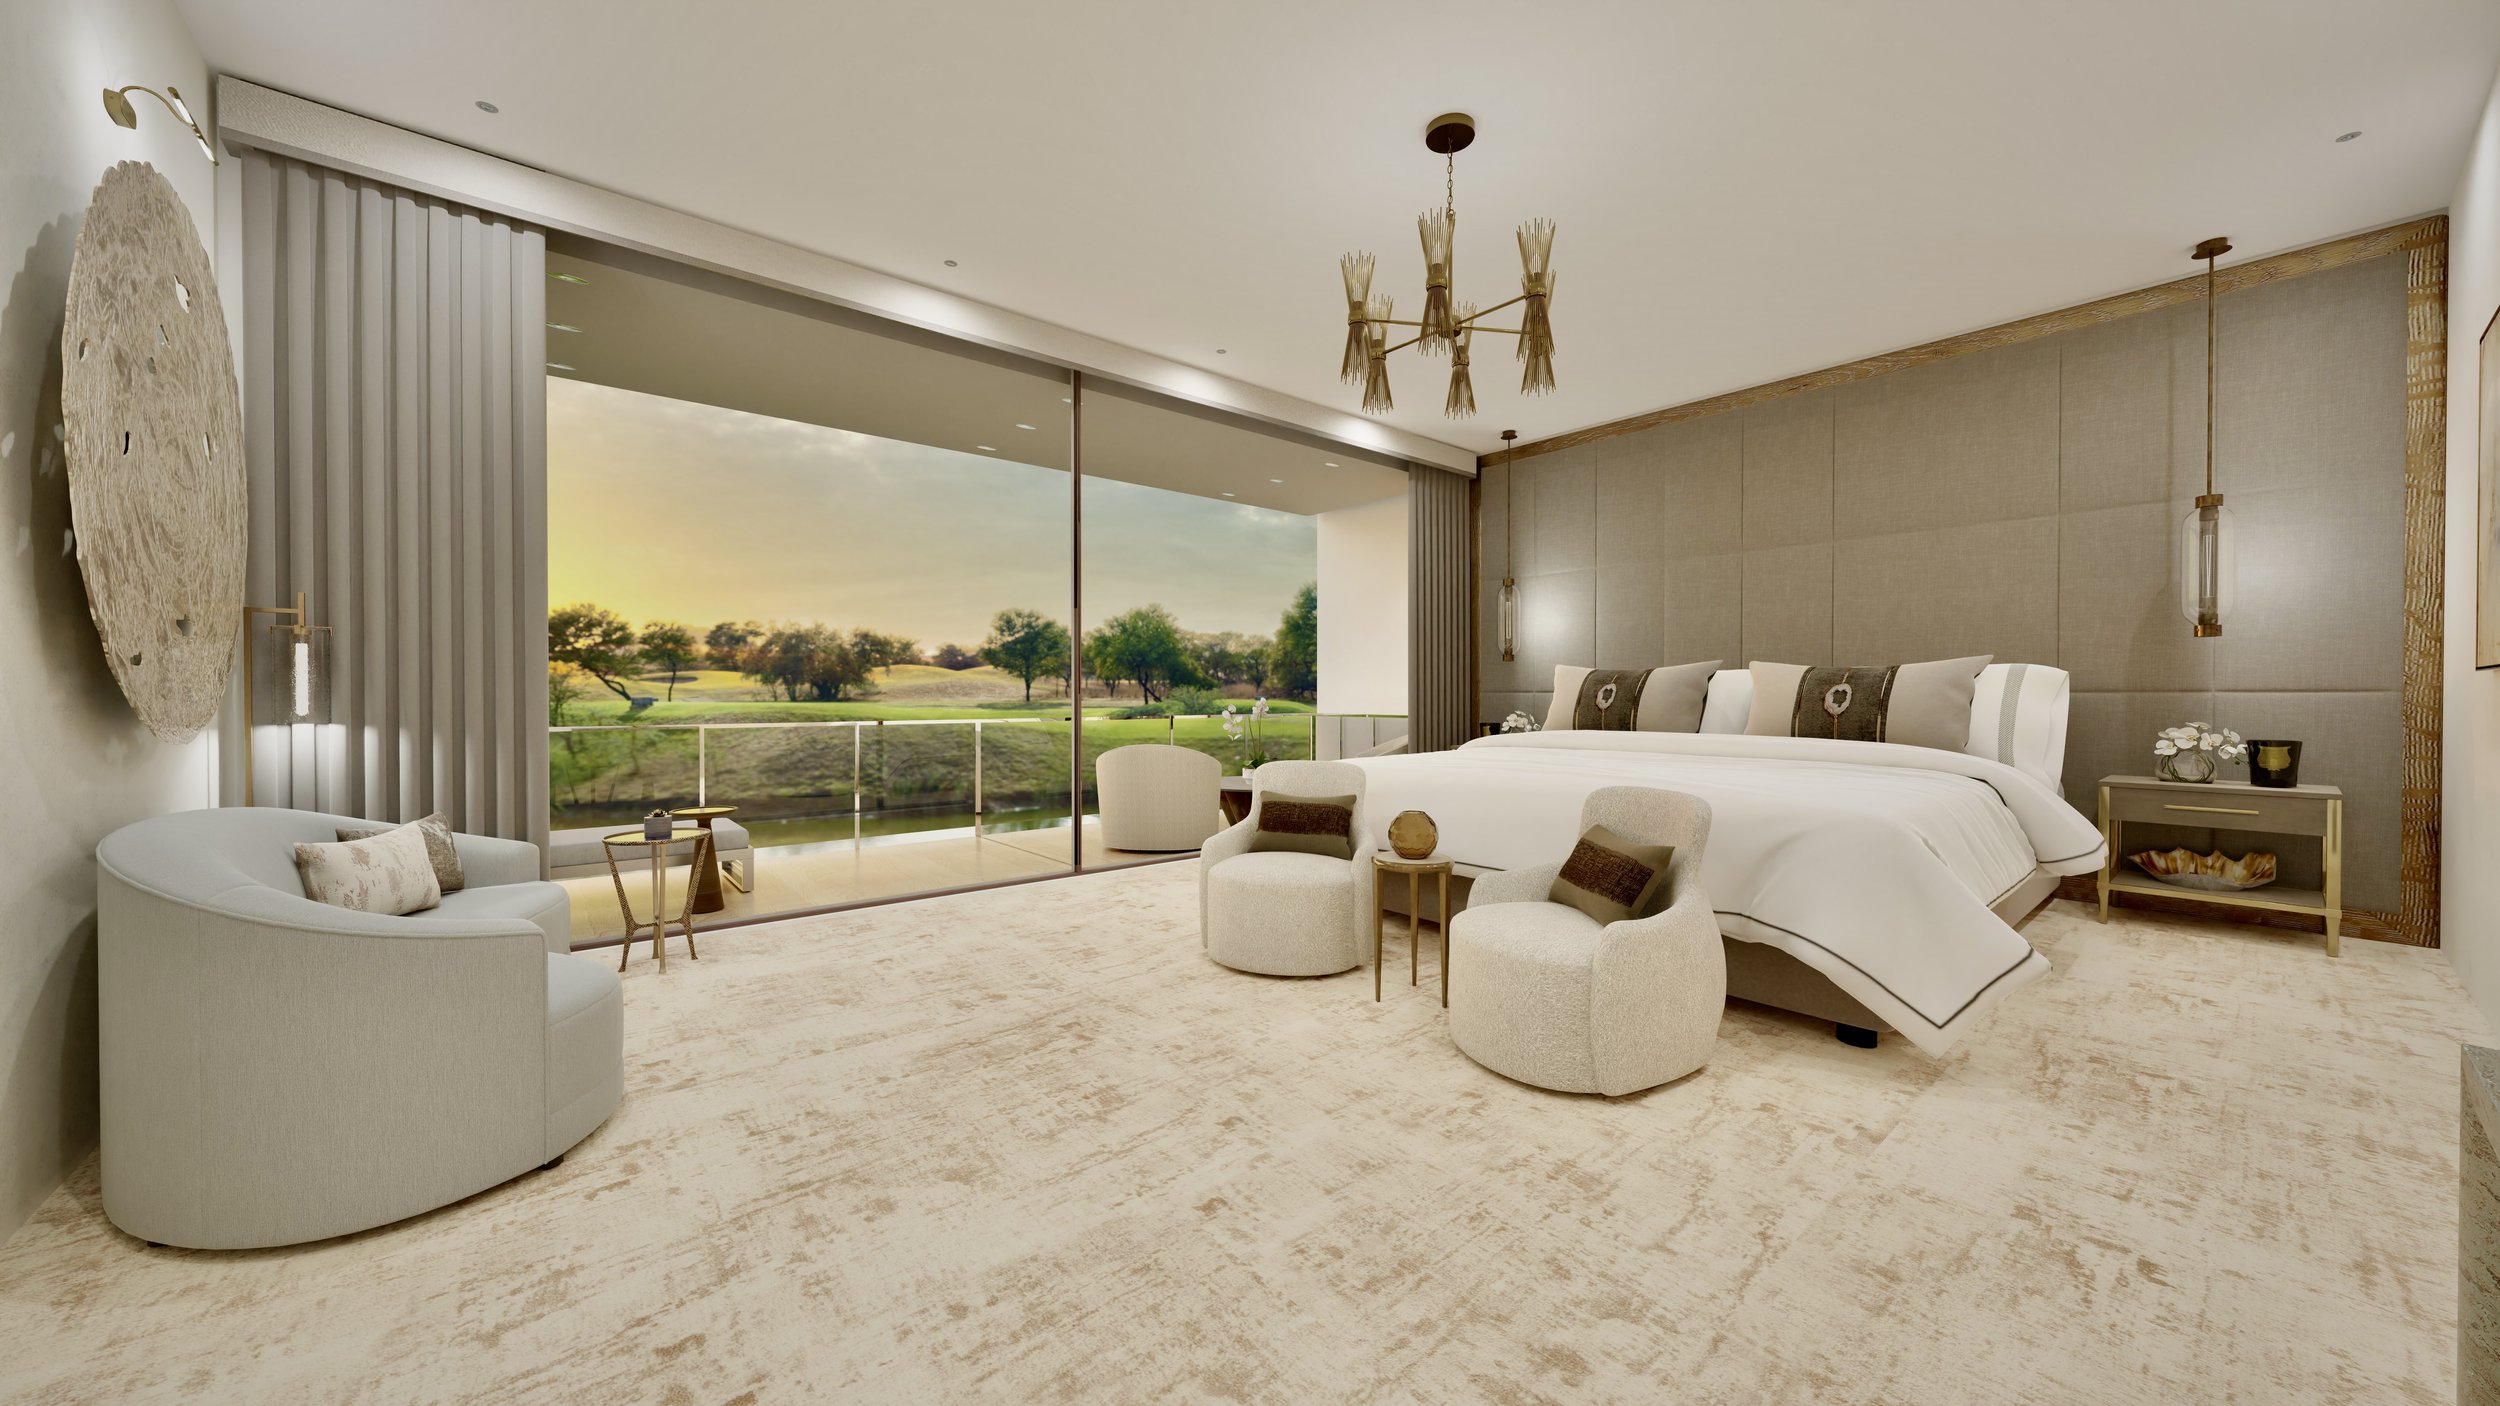 Dubai Hills apartment interior design